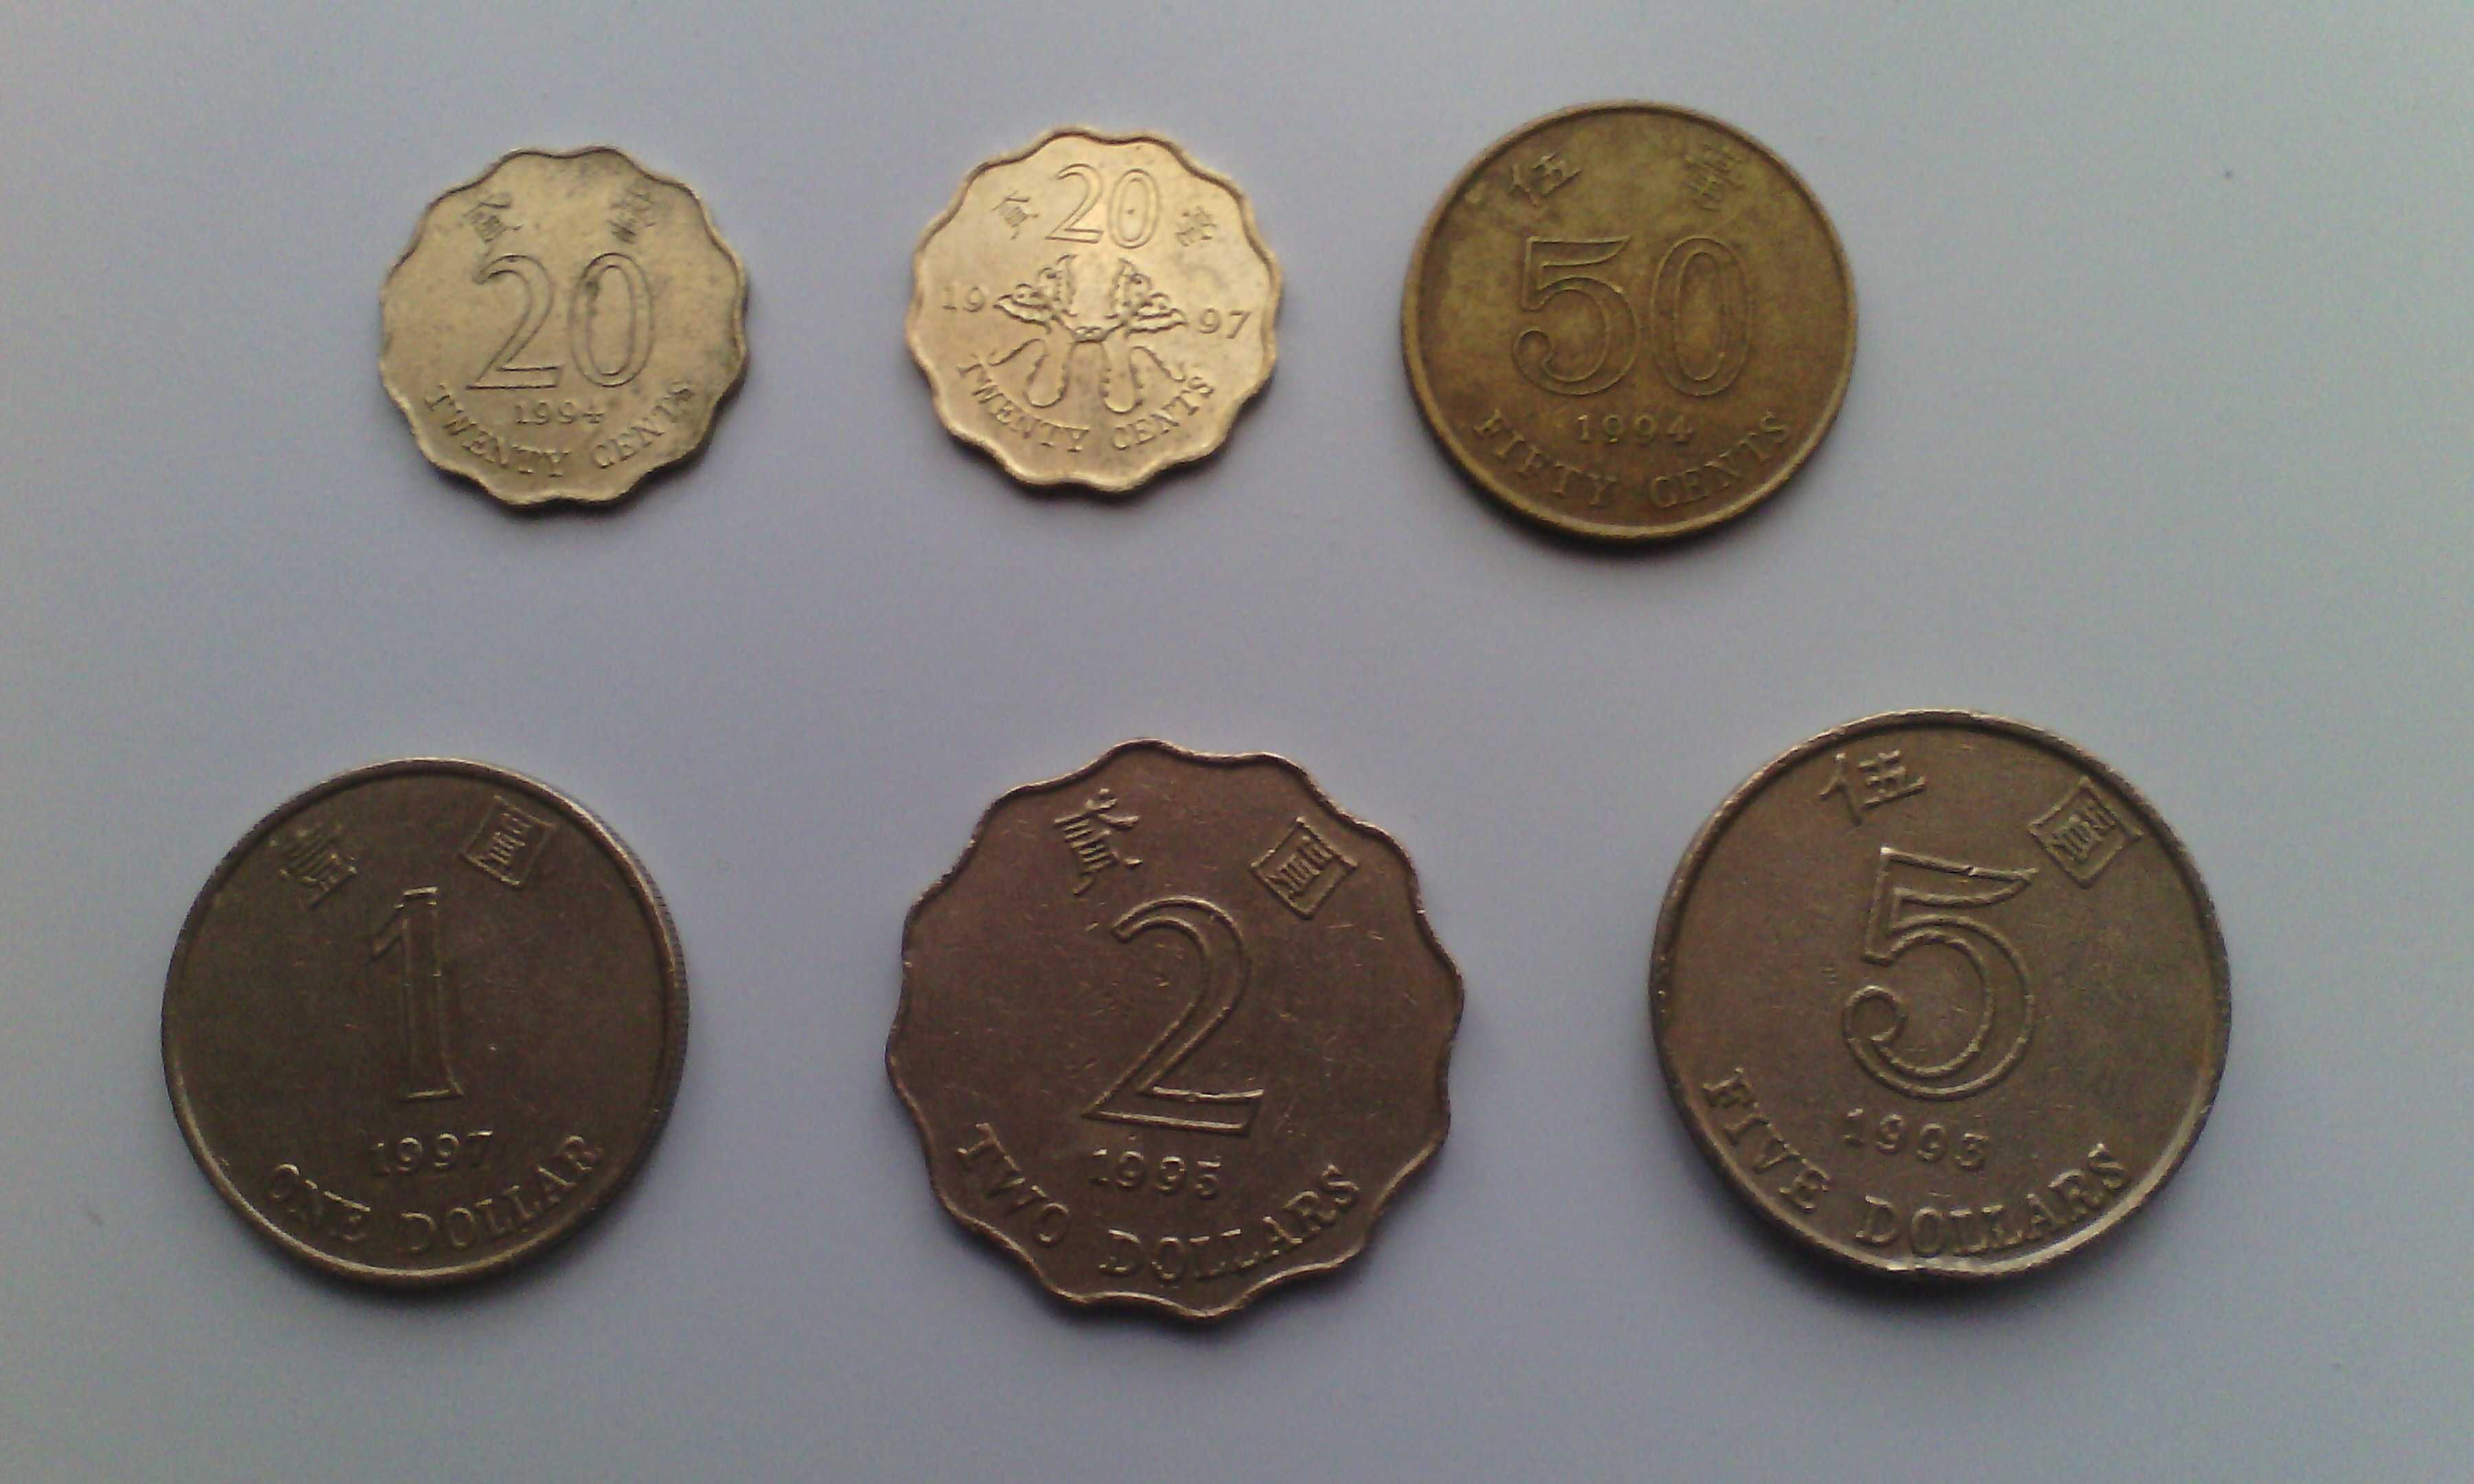 Монеты Китая, Гонконга, Индонезии для коллекции